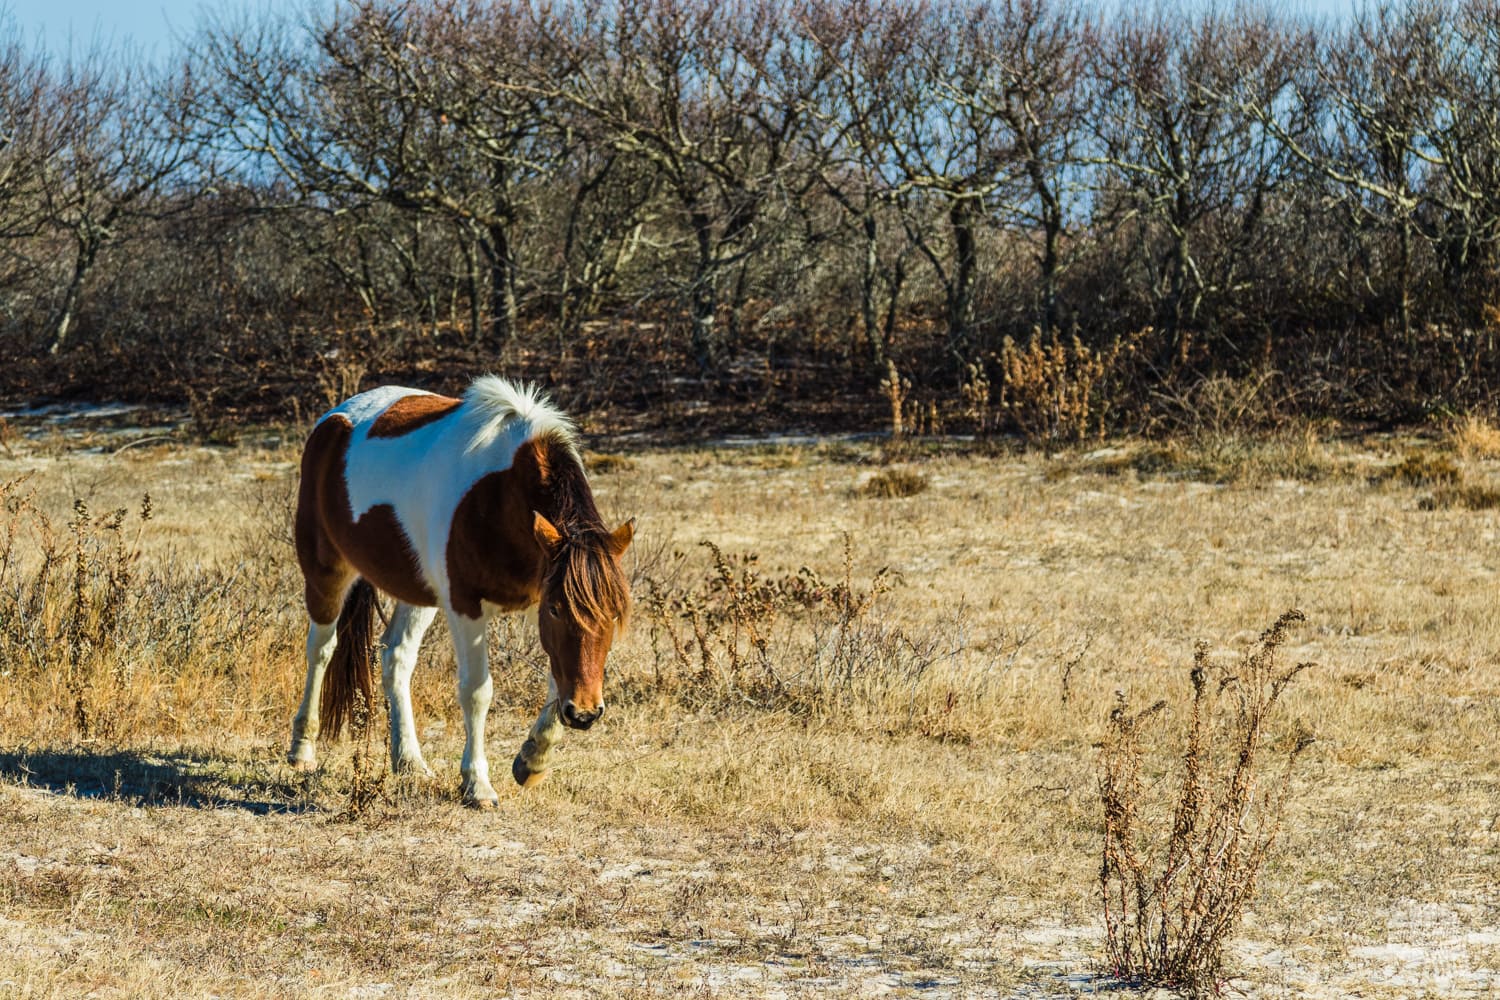 Wild horse at Assateague Island National Seashore.